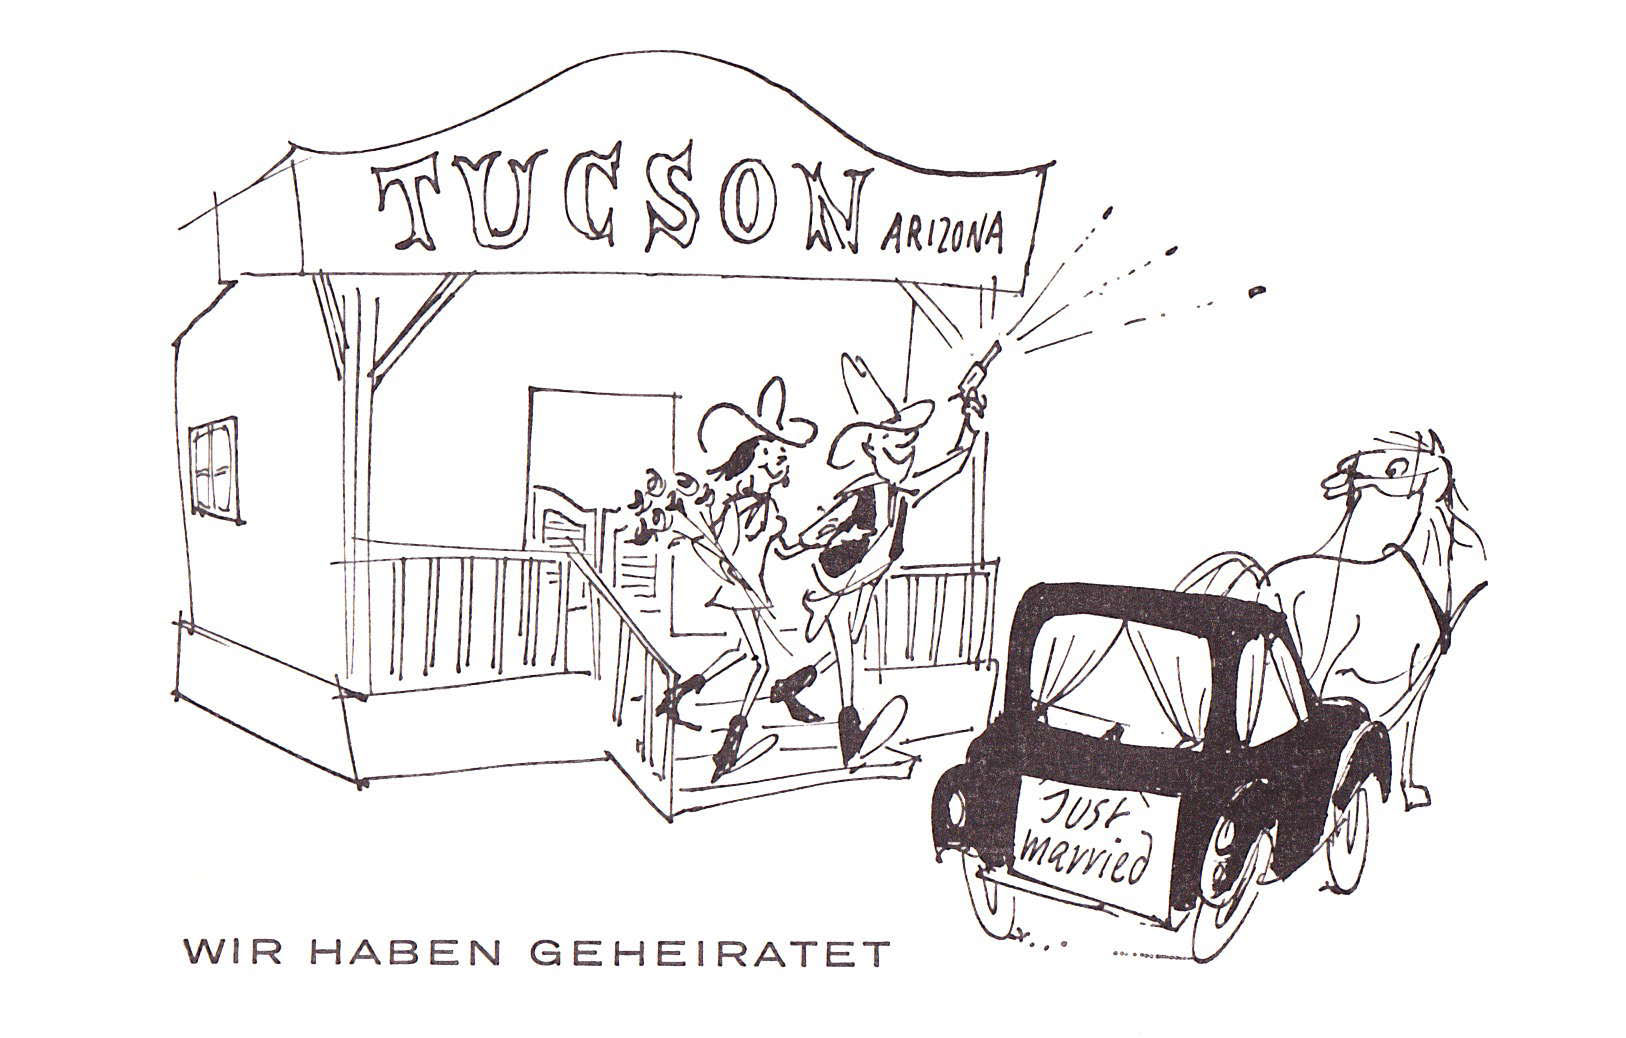 Hochzeit_Tochter_Sabine_1970_Tucson_Arizona_US_Seite_1